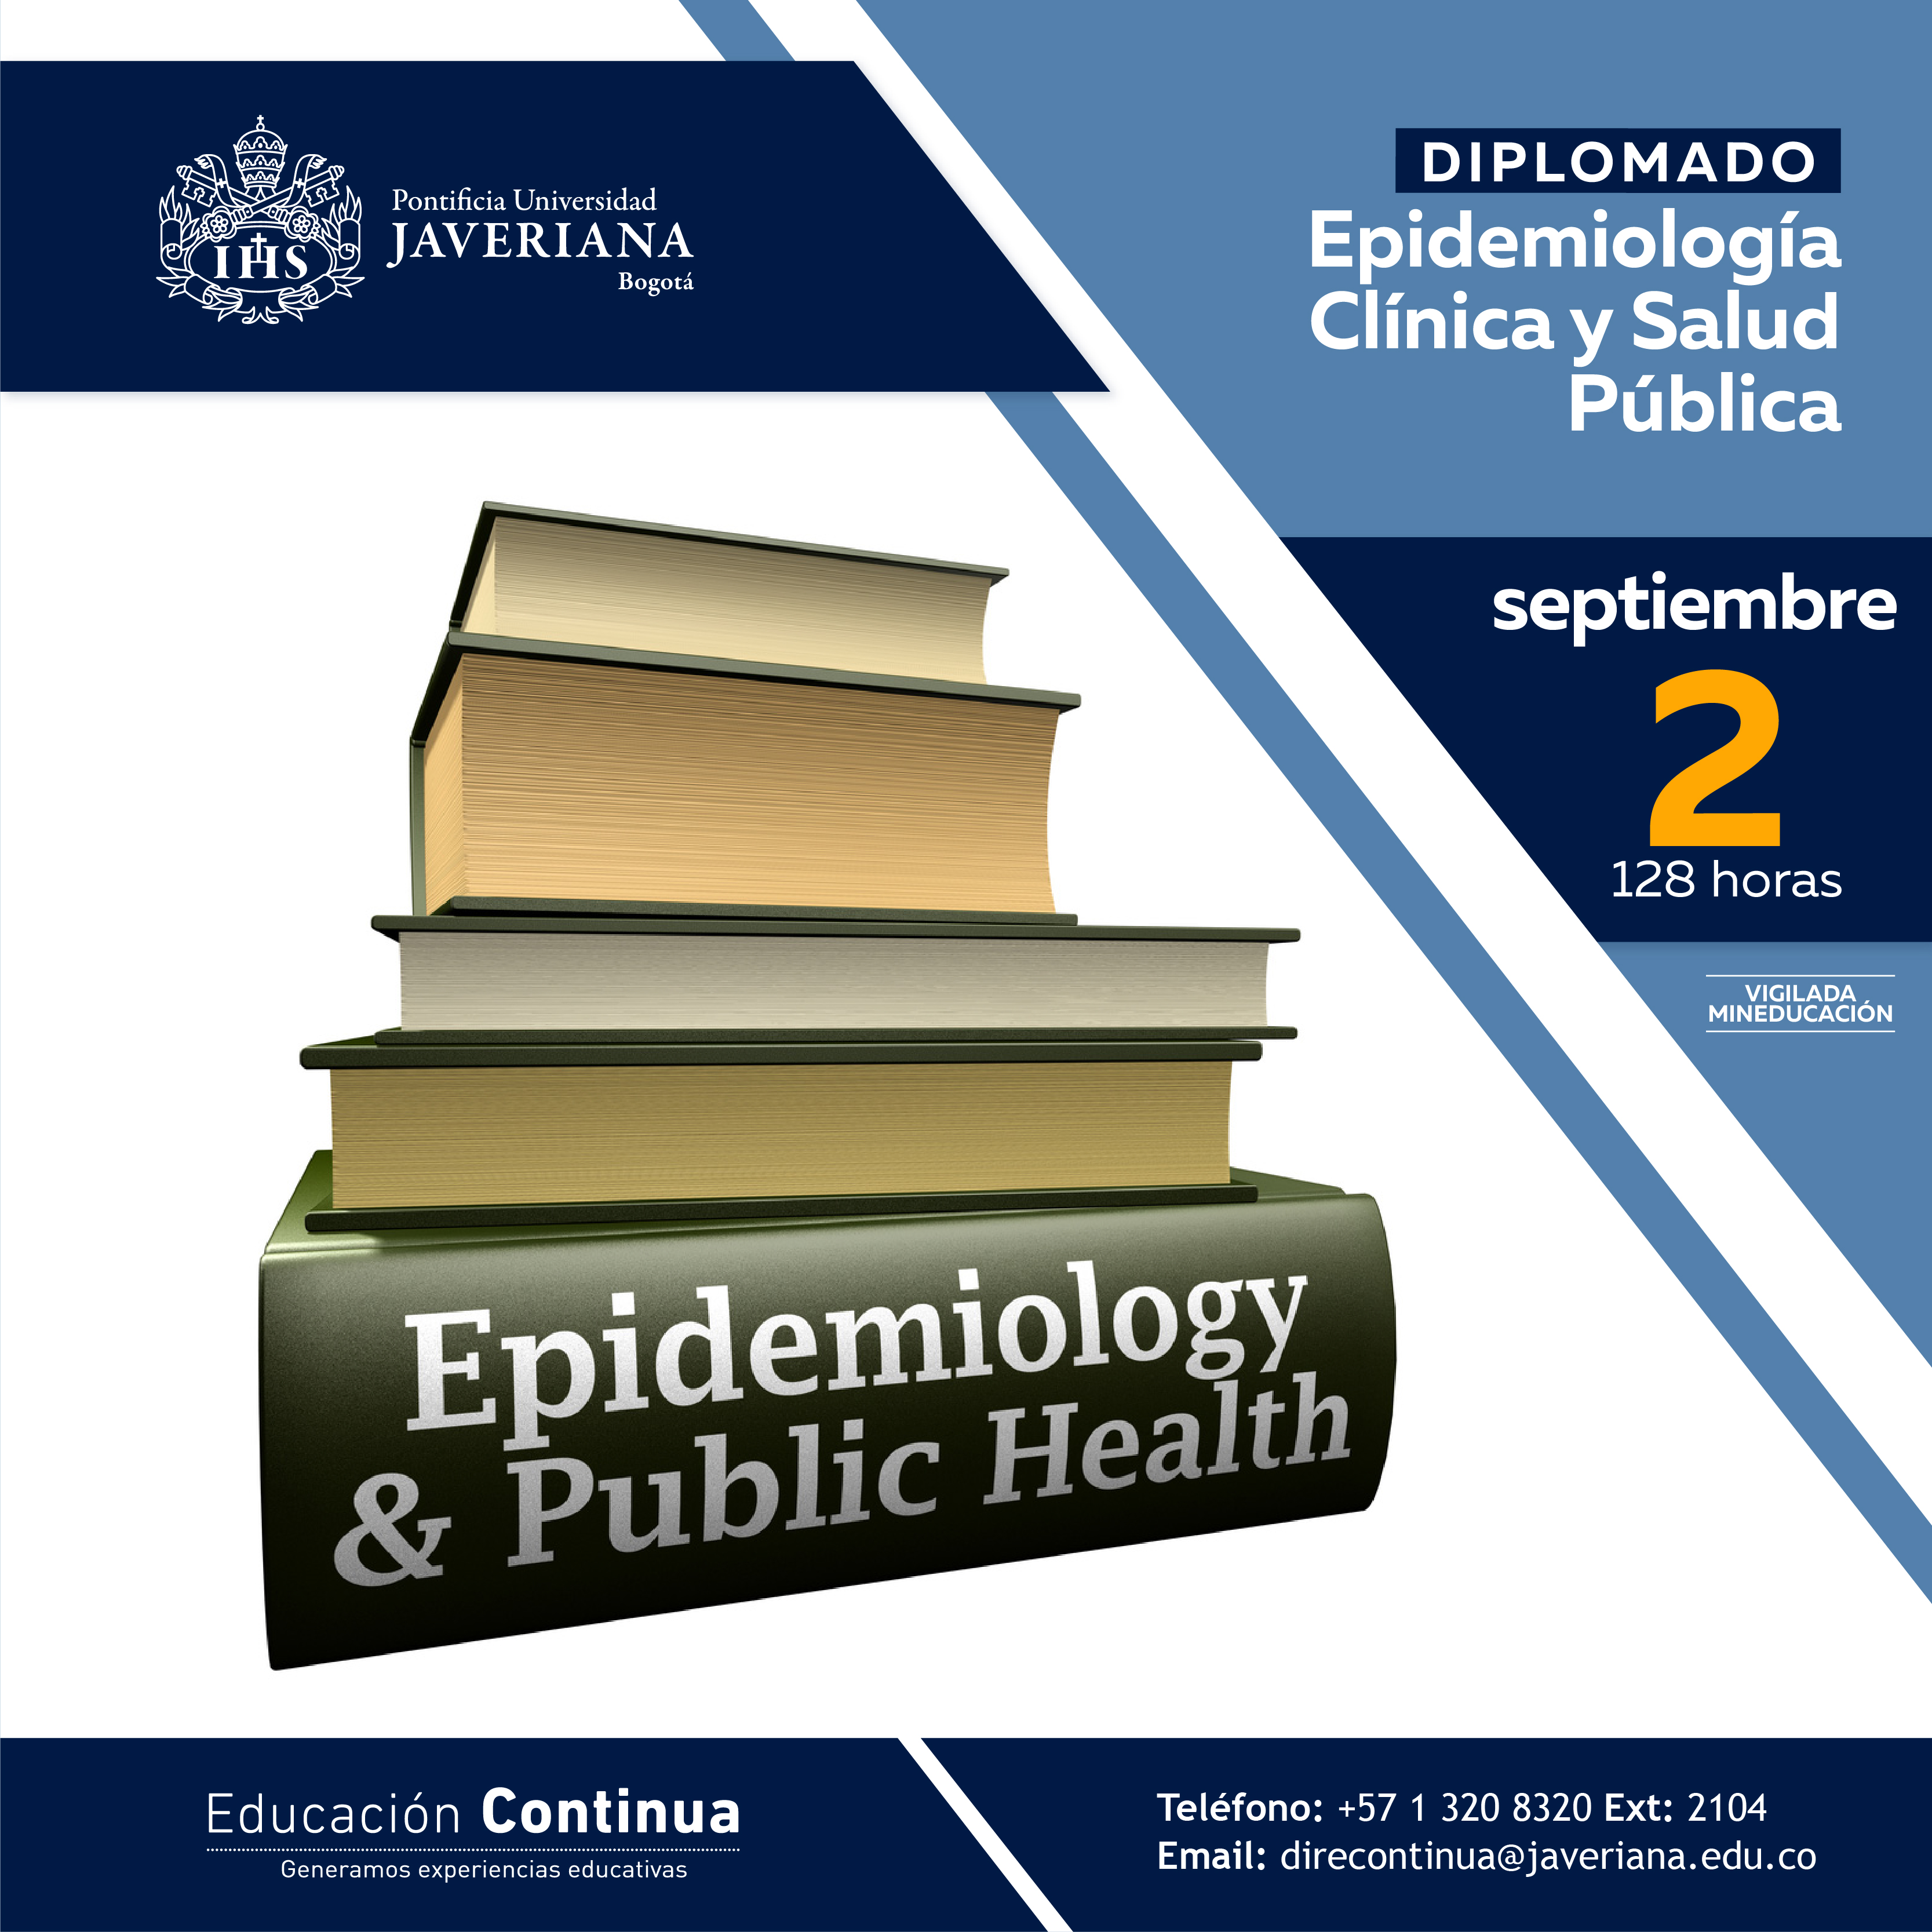 Epidemiologa Clnica y Salud Pblica